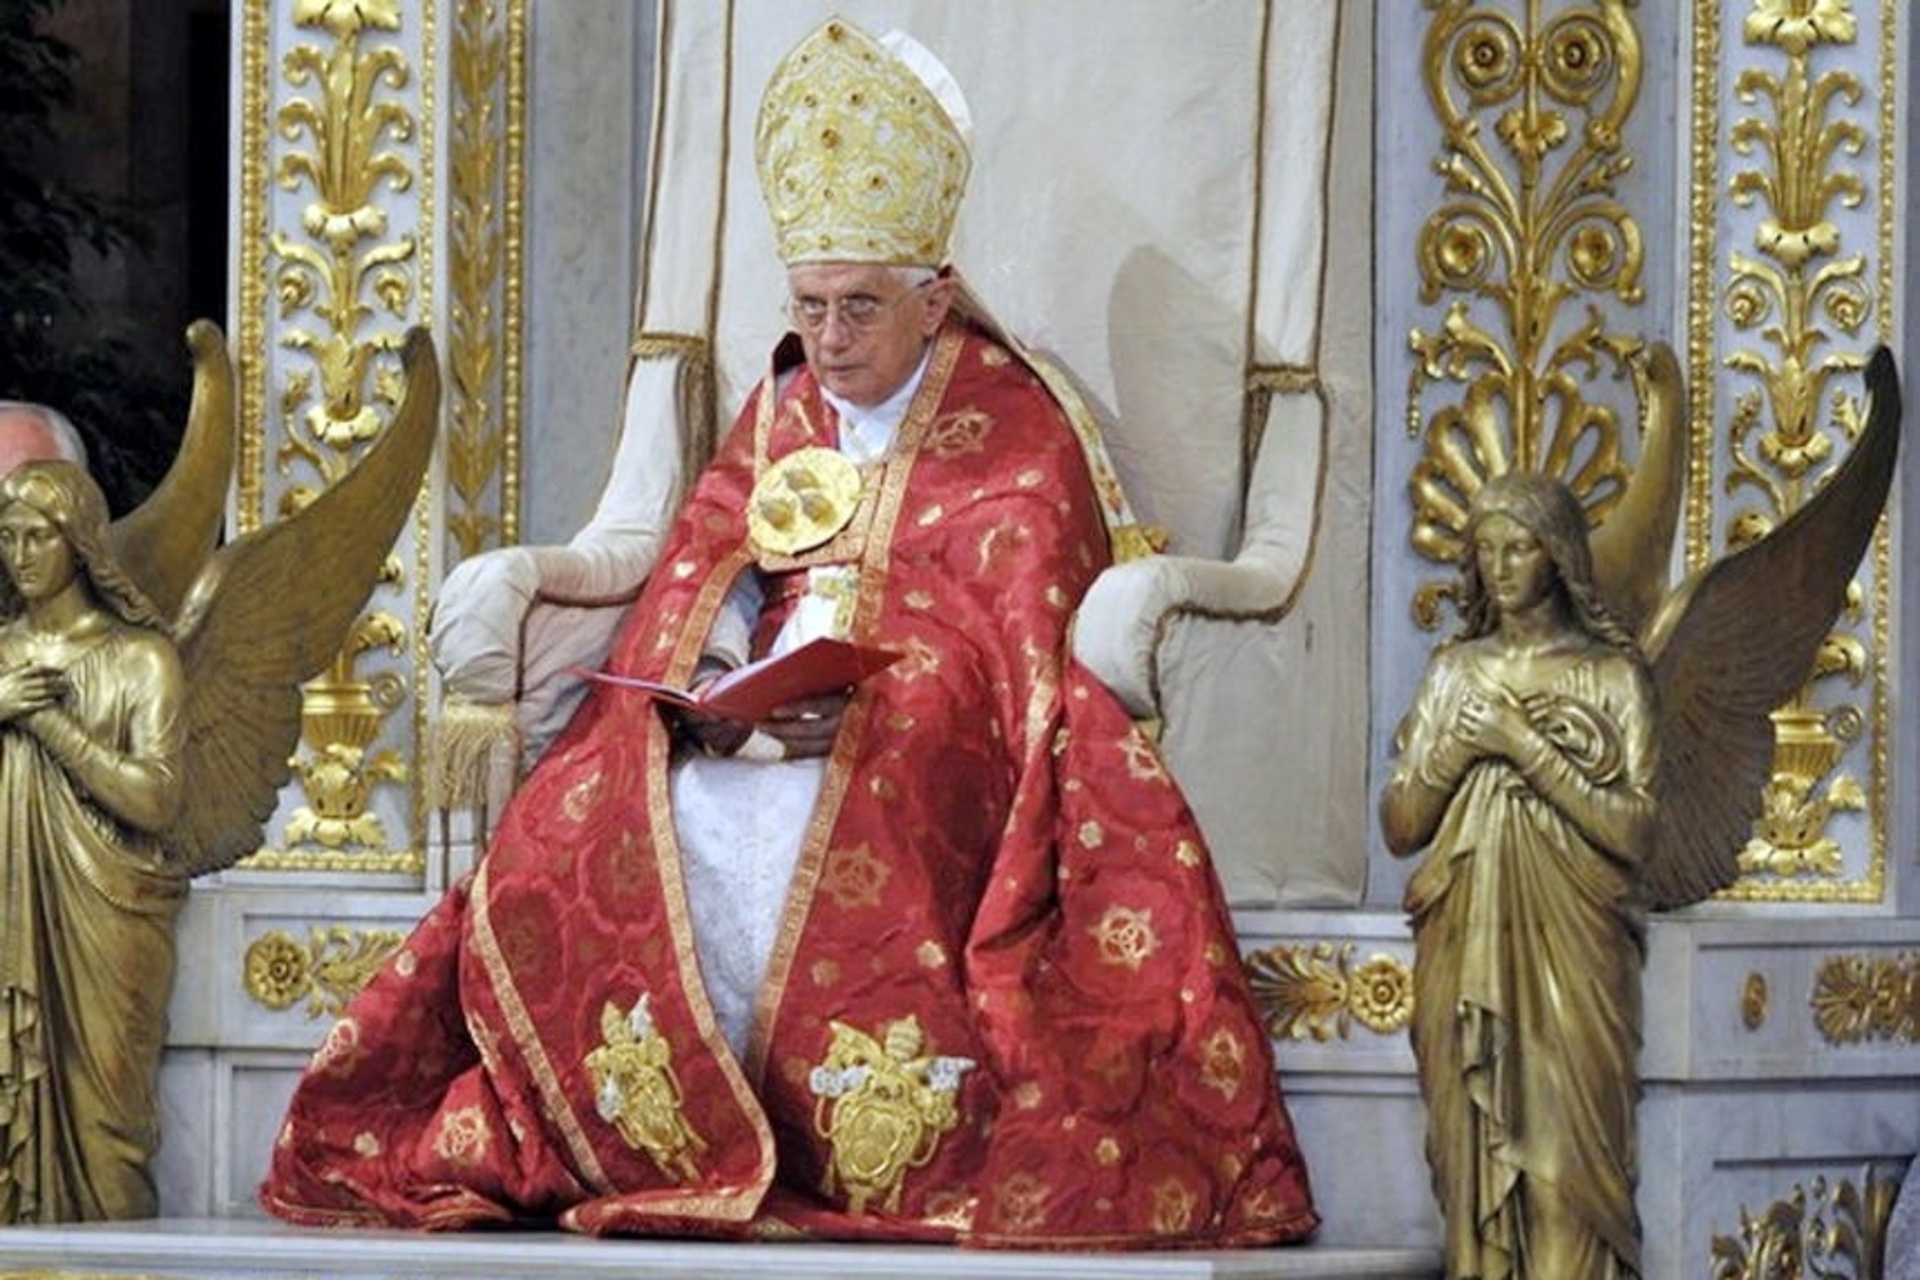 Papa Benet XVI: Benet XVI, nascut Joseph Ratzinger, 265è Papa de l'Església Catòlica i Bisbe de Roma, va presidir la cerimònia d'obertura de l'Any Paulí el 29 de juny de 2008.